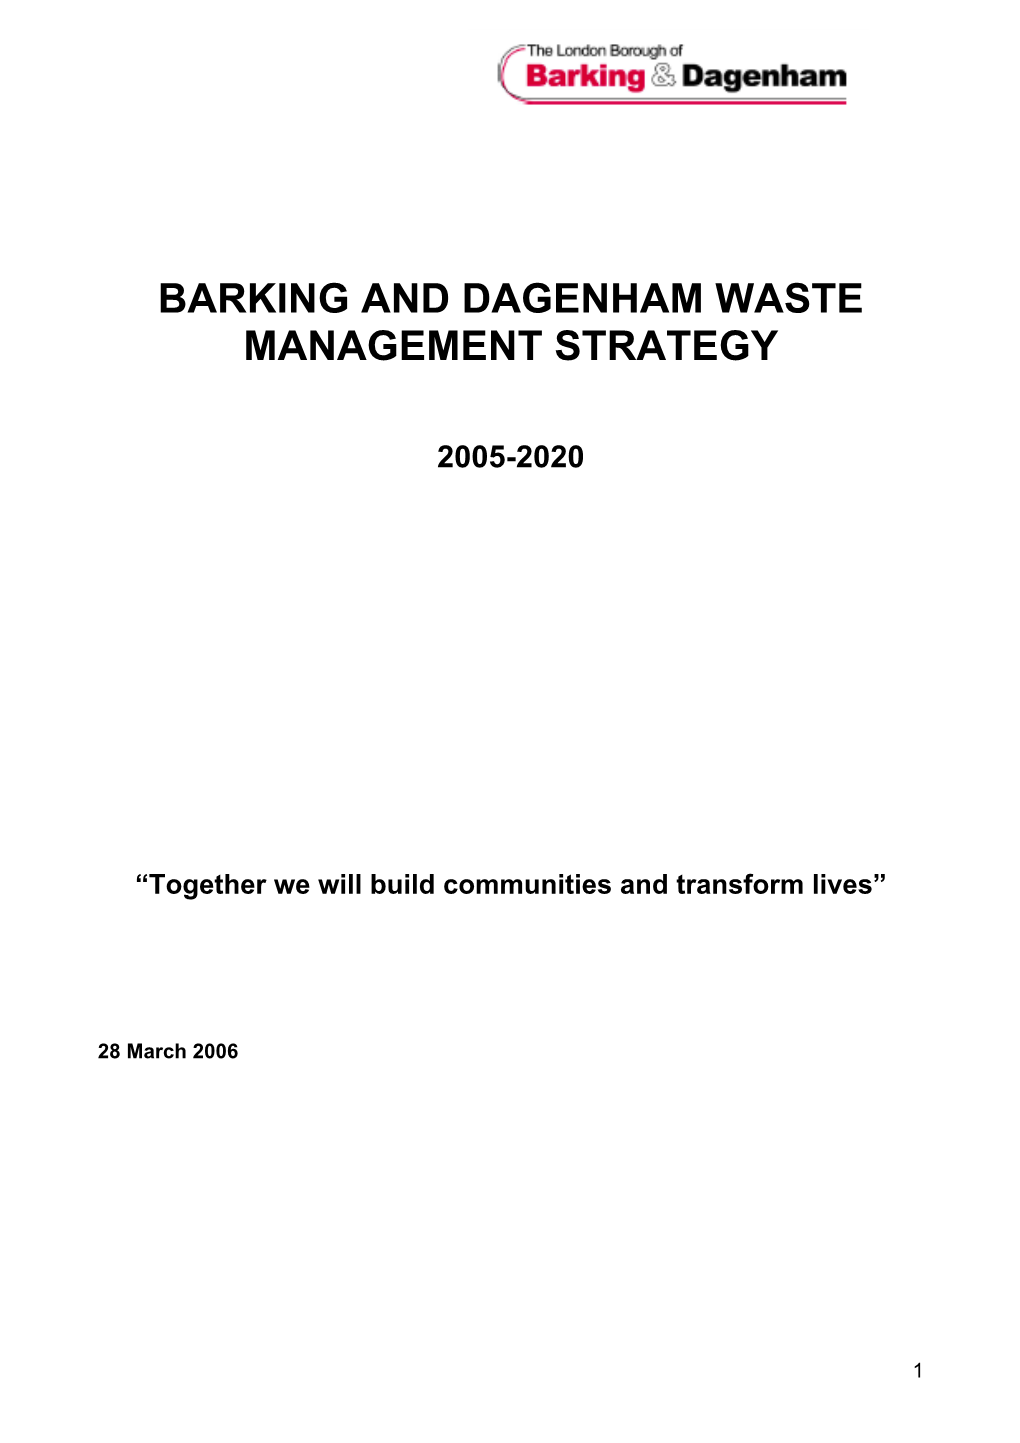 Barking and Dagenham Waste Management Strategy